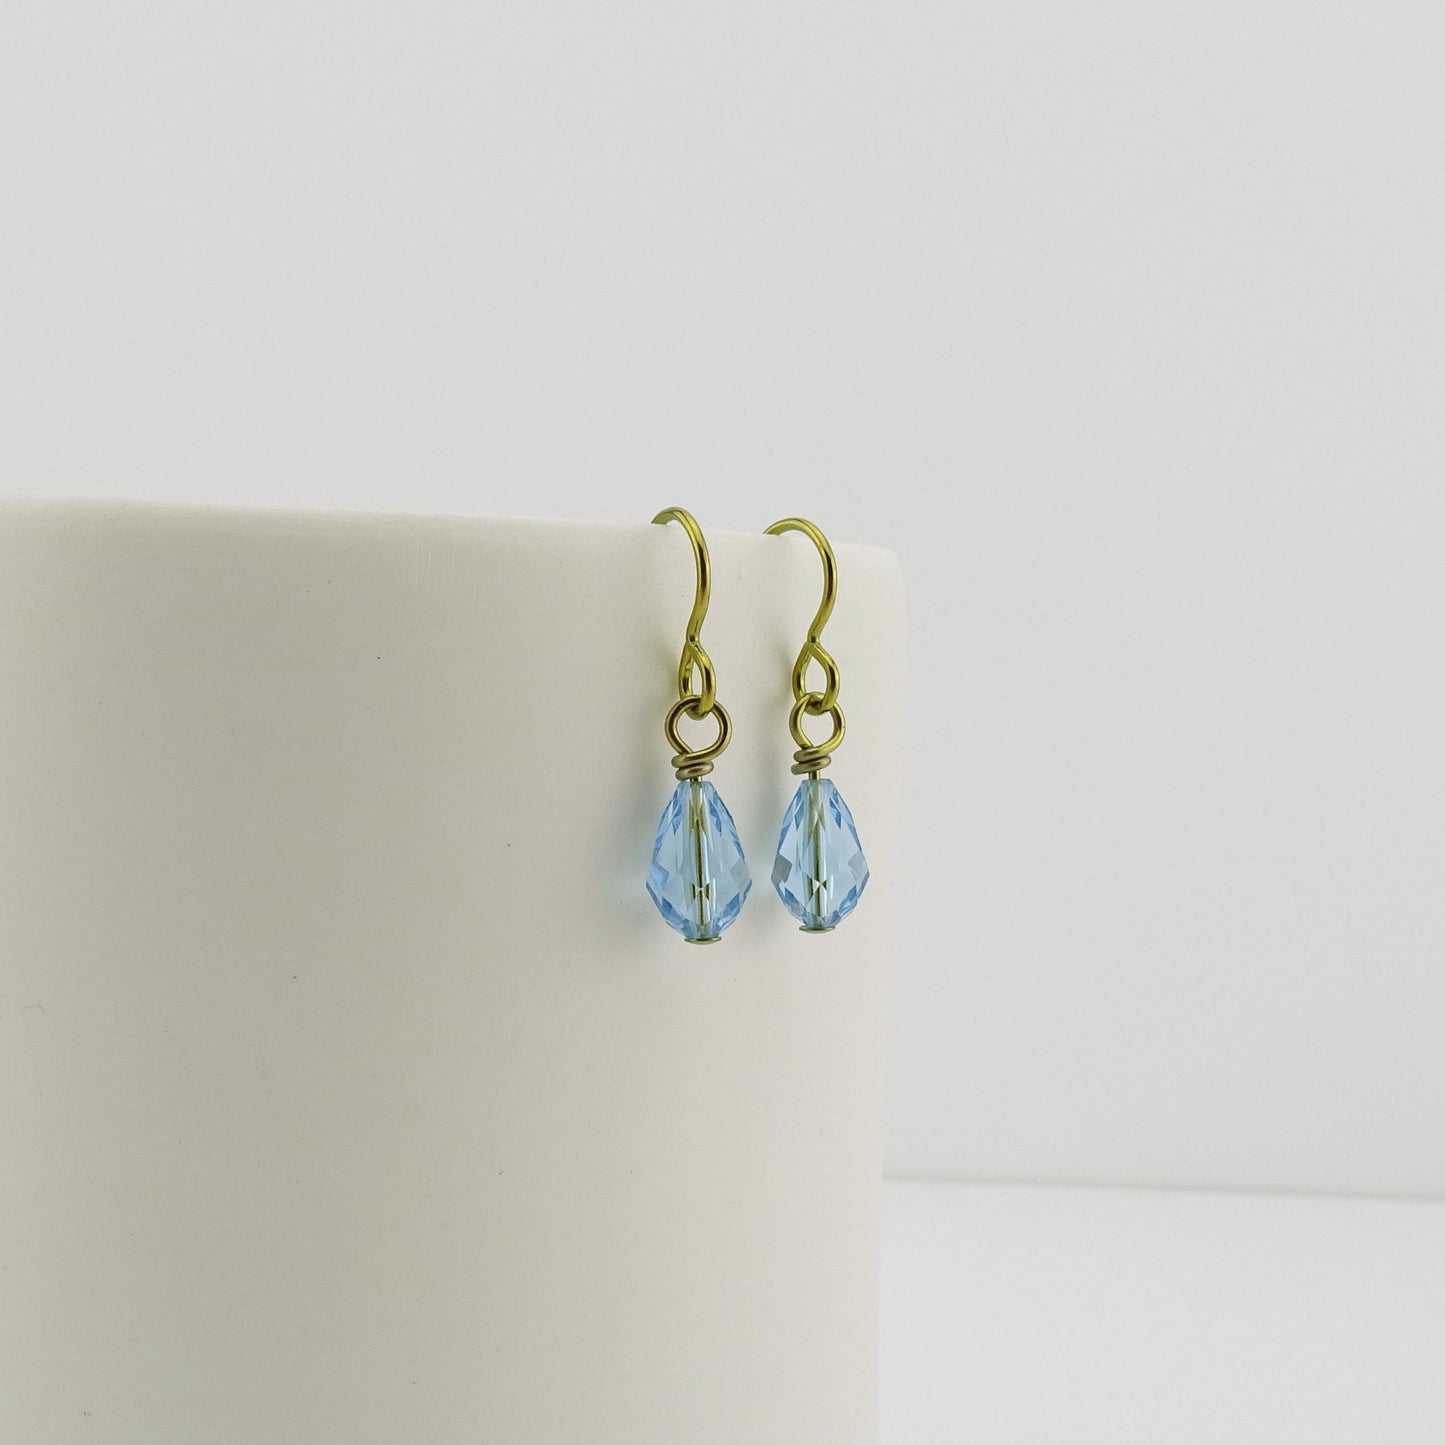 Aquamarine Crystal Gold Niobium Earrings, Aqua Blue Swarovski Crystal Drop Nickel Free Earrings, Hypoallergenic Earrings for Sensitive Ears